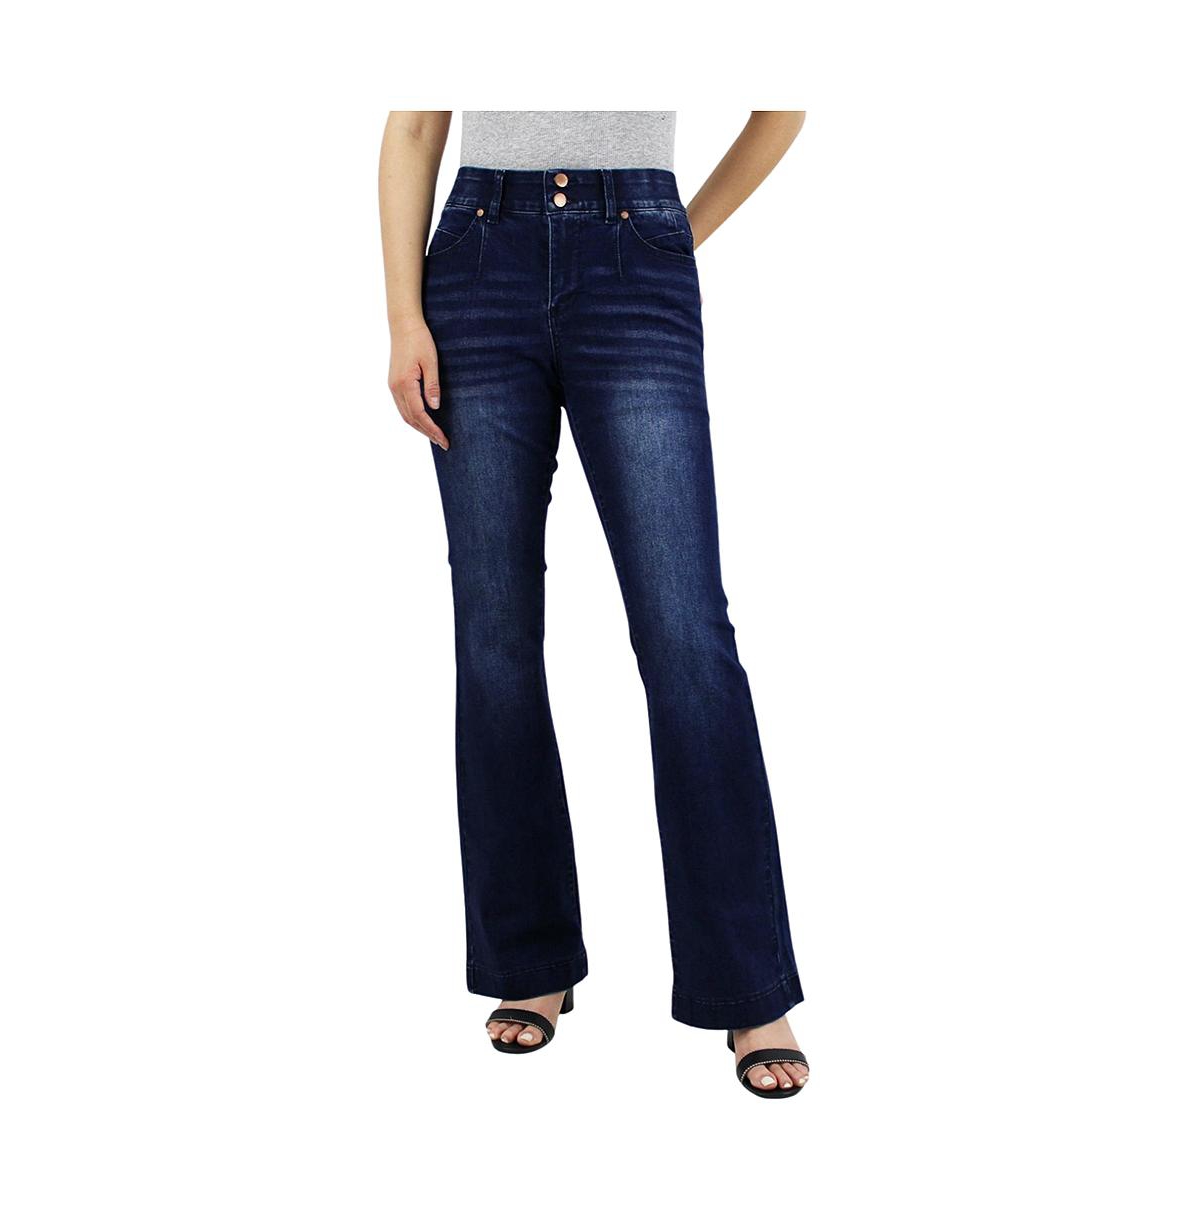 Women's Dark Wash Tummy Control Bootcut with Front Pocket Seam detail Jeans - Dark wash